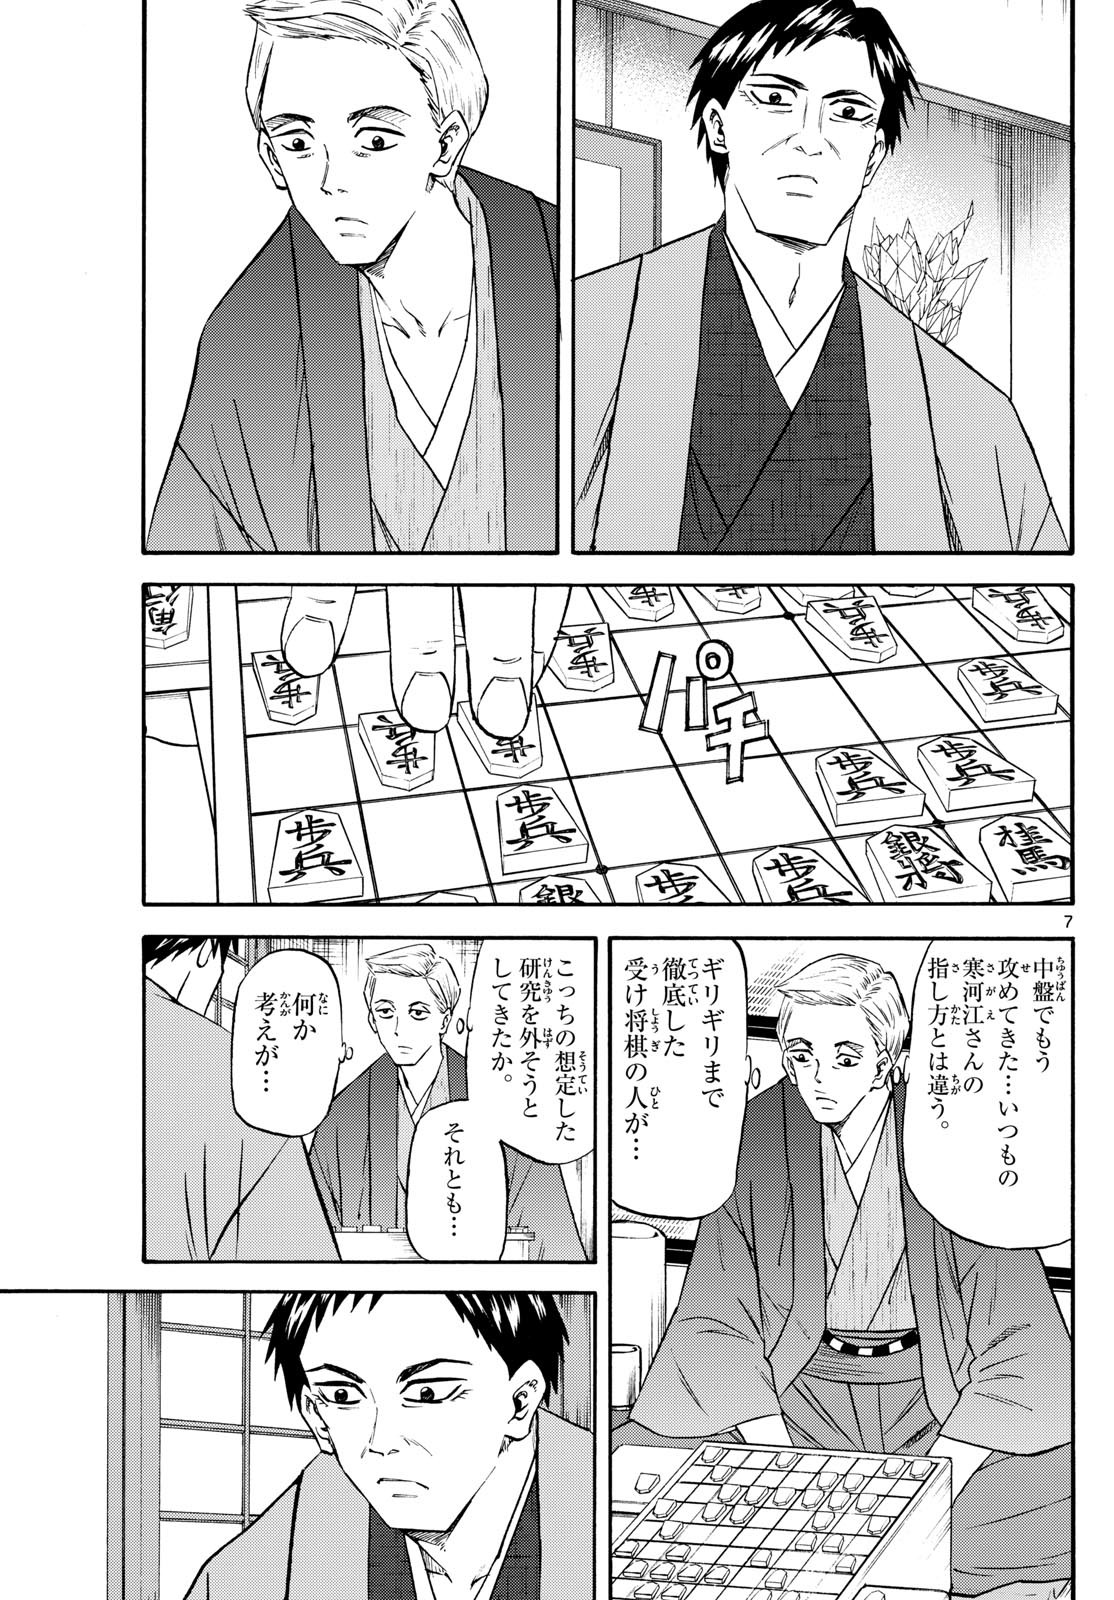 Ryu-to-Ichigo - Chapter 195 - Page 7